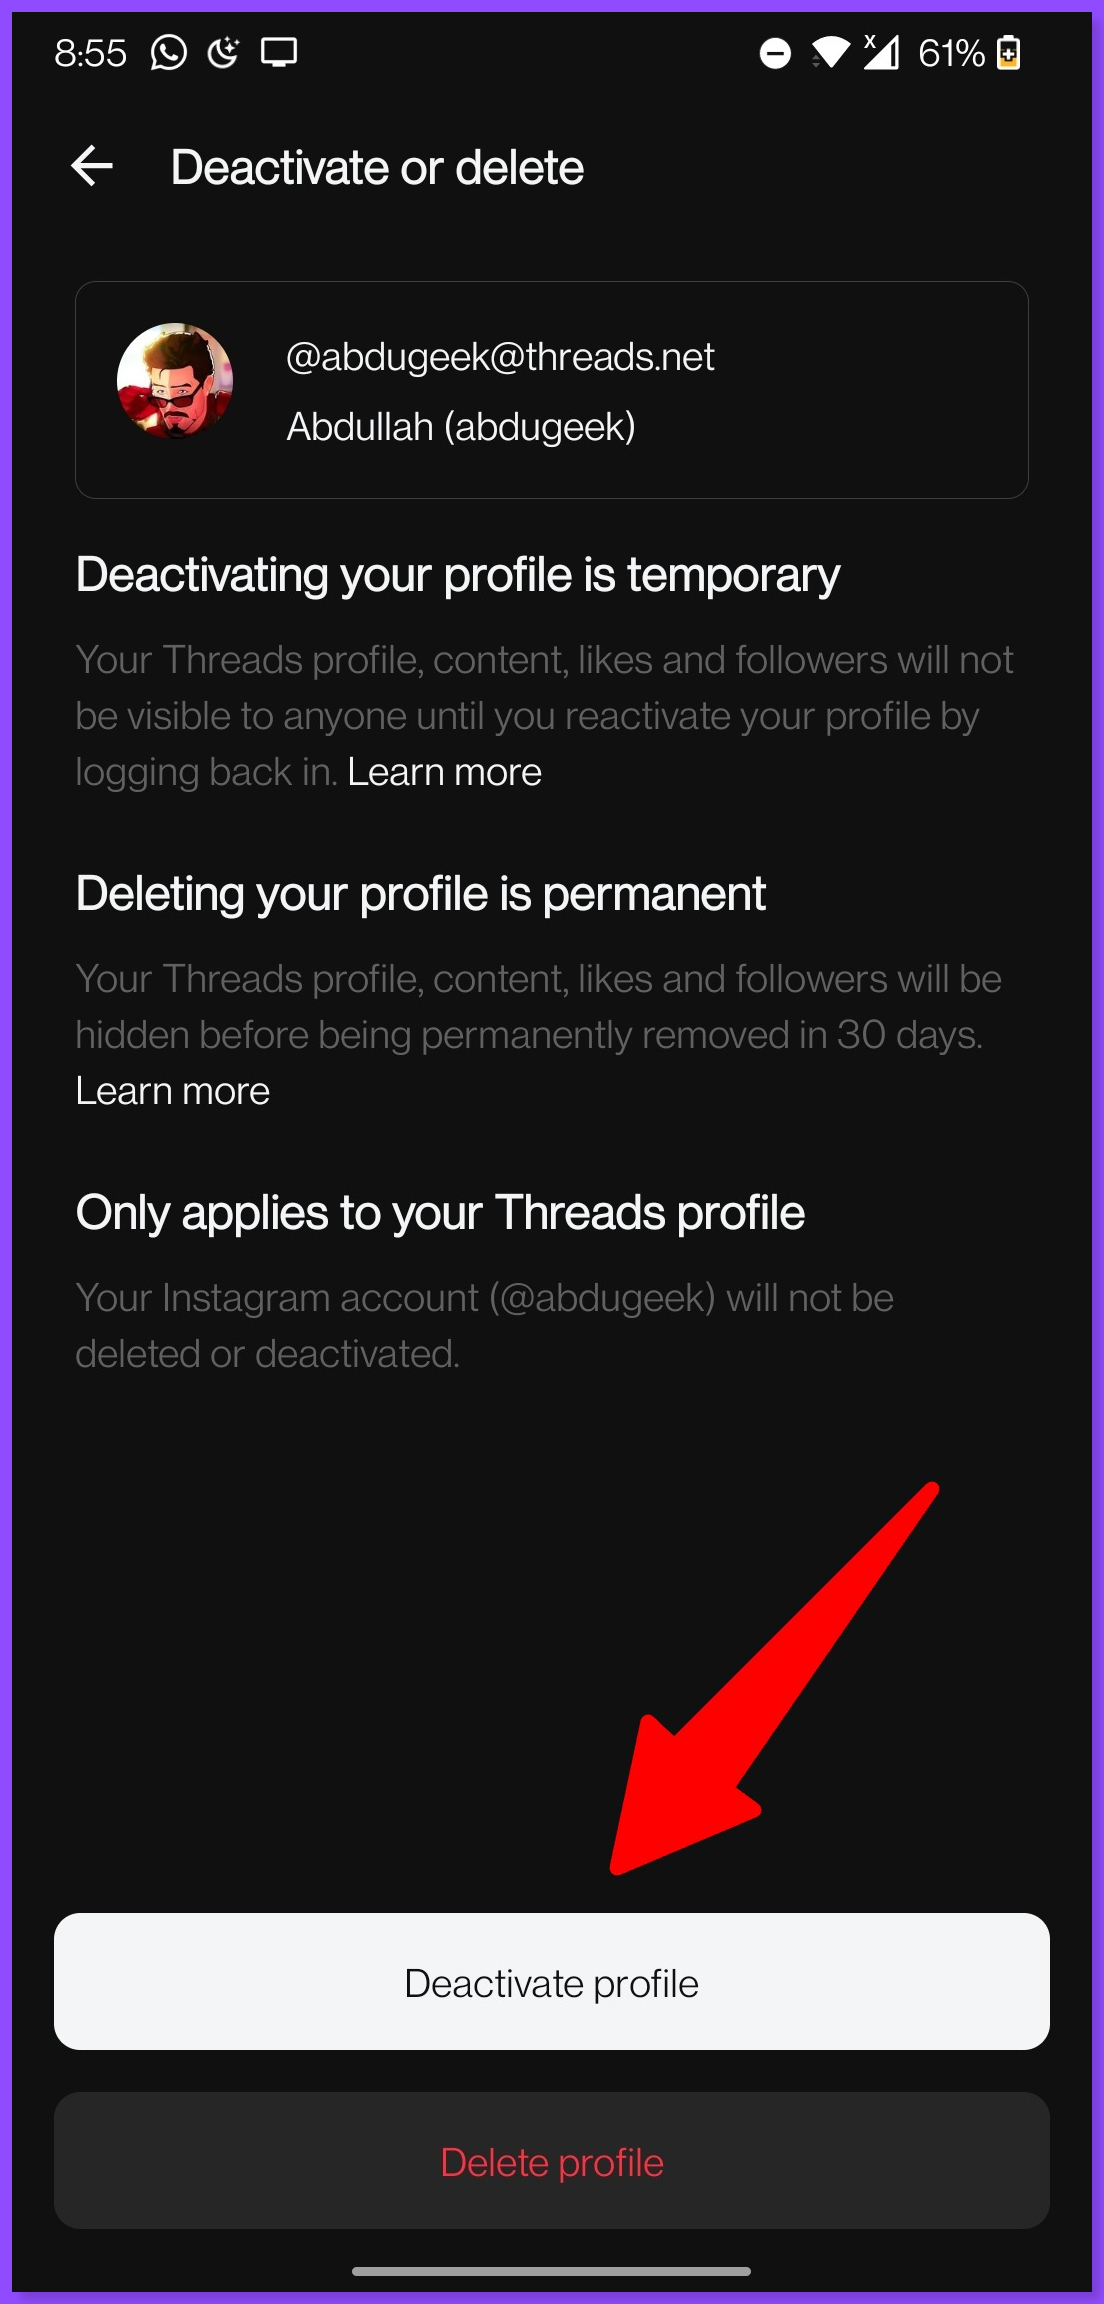 Deactivate profile and delete profile button in Threads app